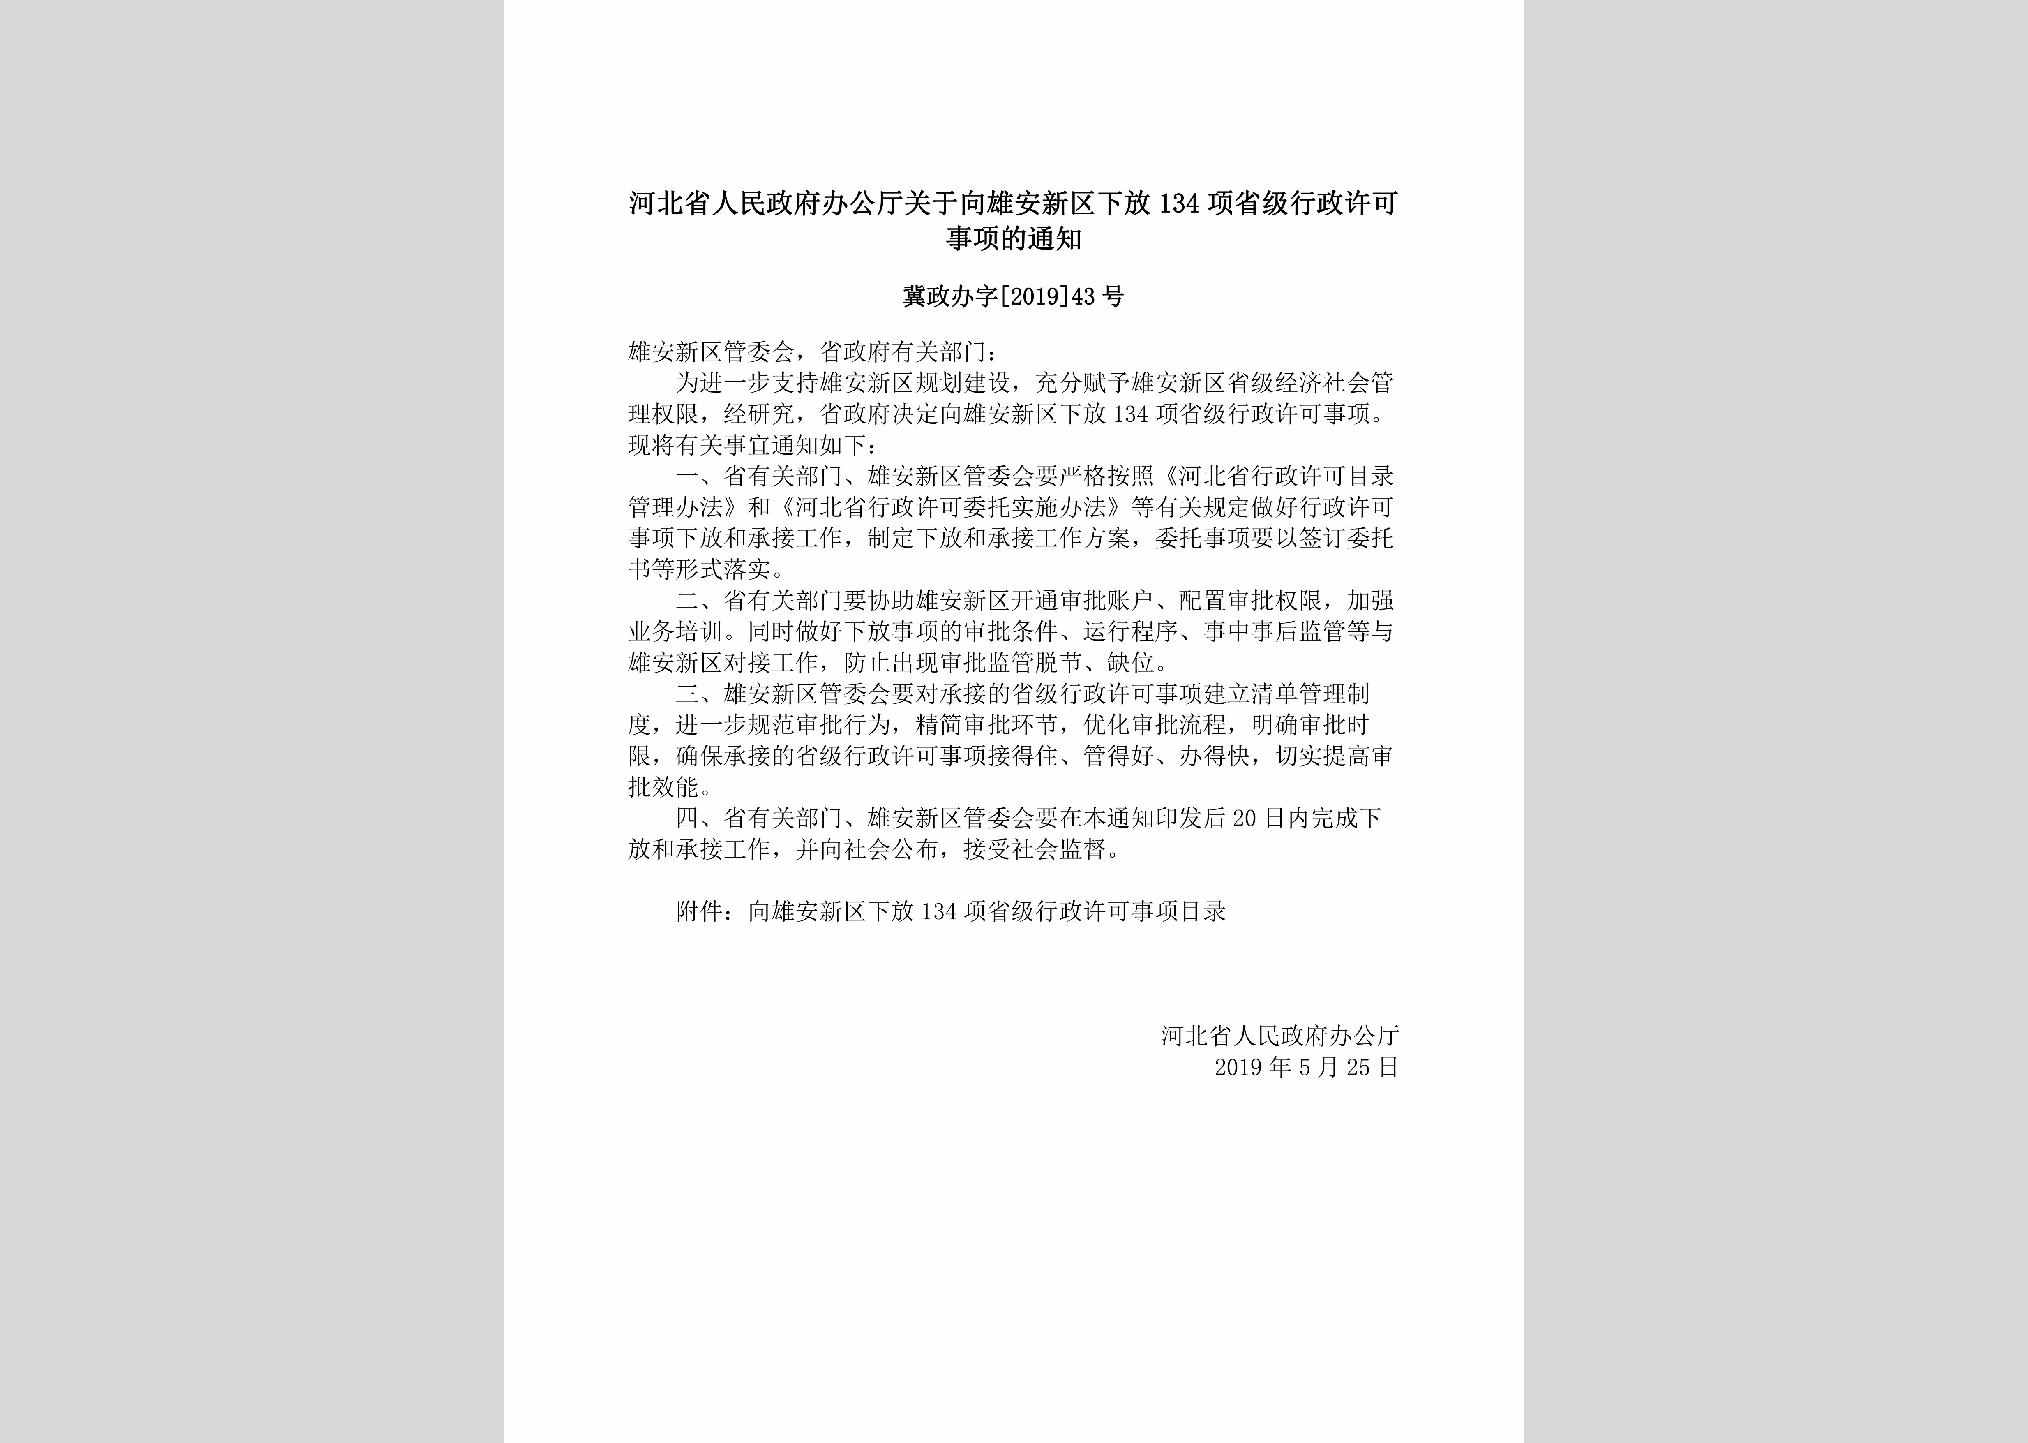 冀政办字[2019]43号：河北省人民政府办公厅关于向雄安新区下放134项省级行政许可事项的通知